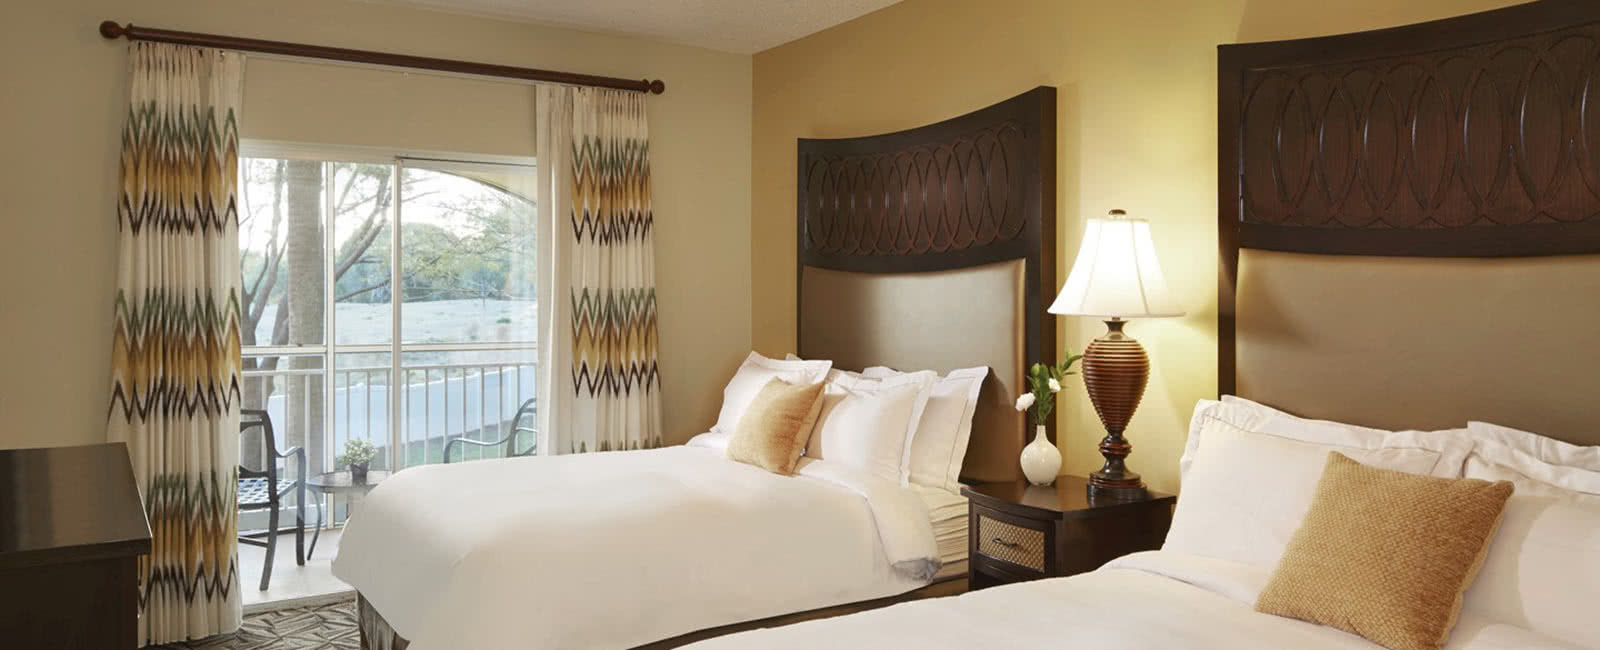 Bedroom at Hilton Grand Vacations Club at SeaWorld in Orlando, Florida